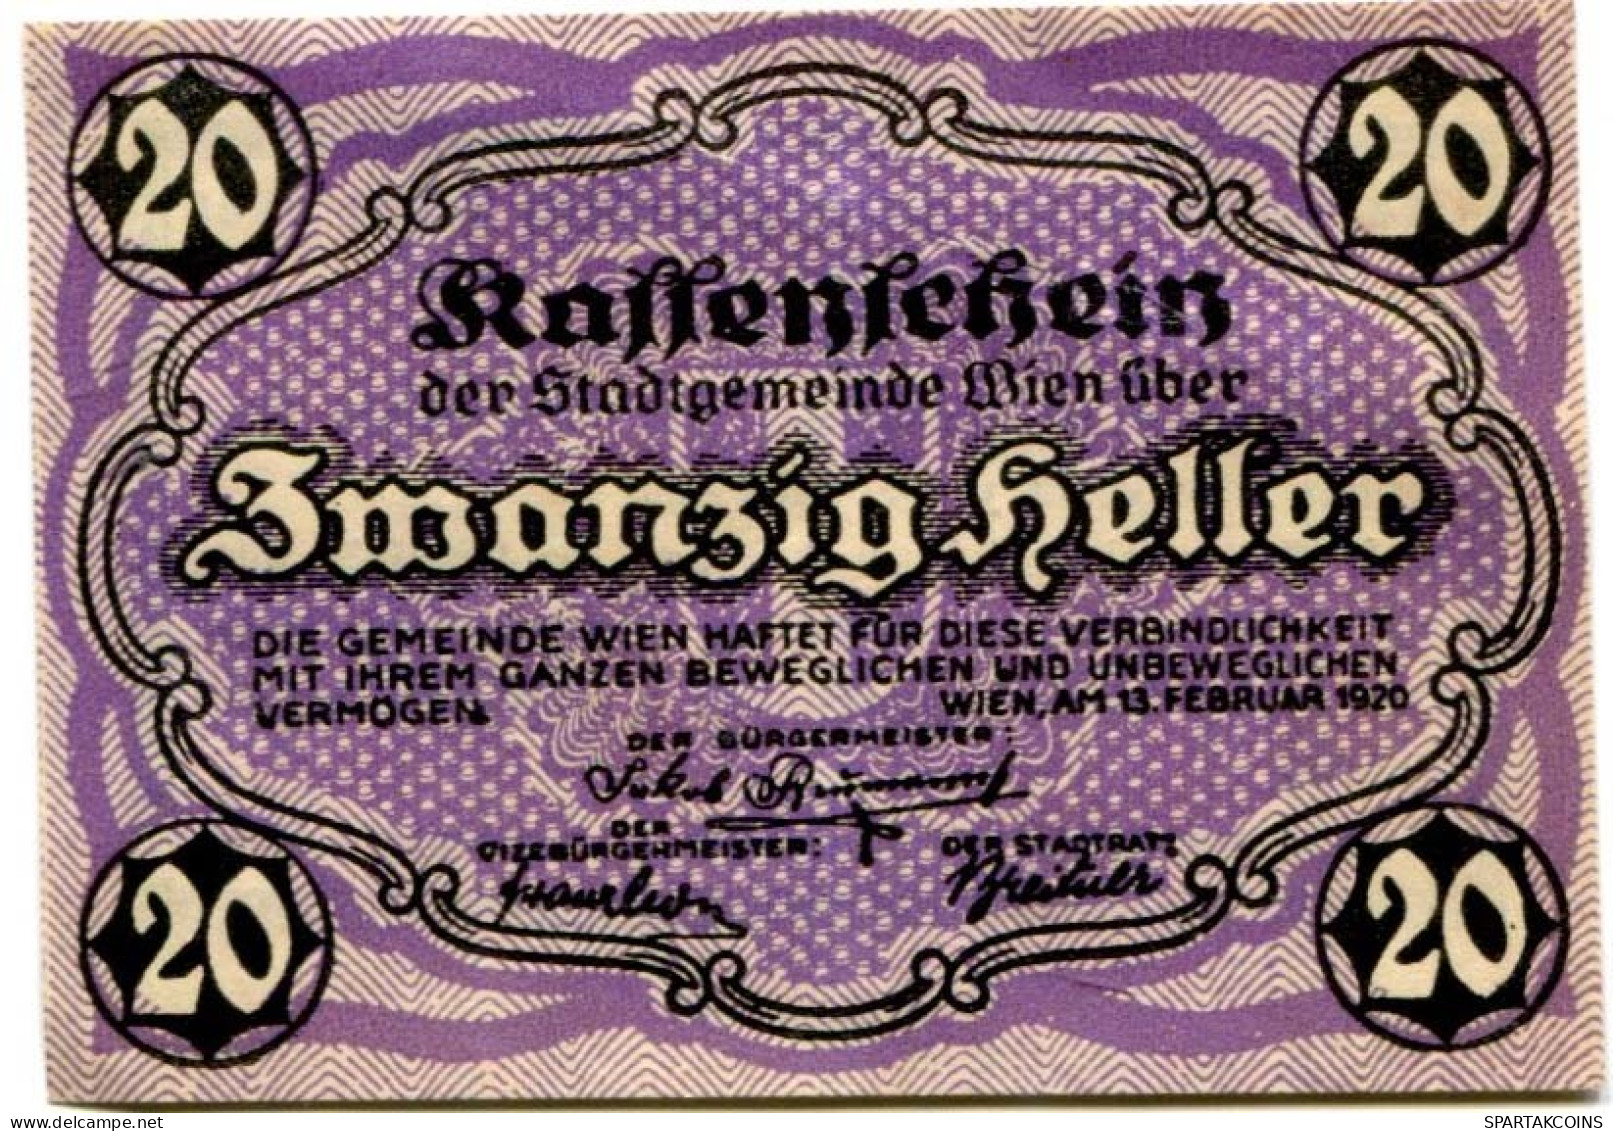 20 HELLER 1920 Stadt Wien Österreich Notgeld Papiergeld Banknote #PL581 - [11] Local Banknote Issues